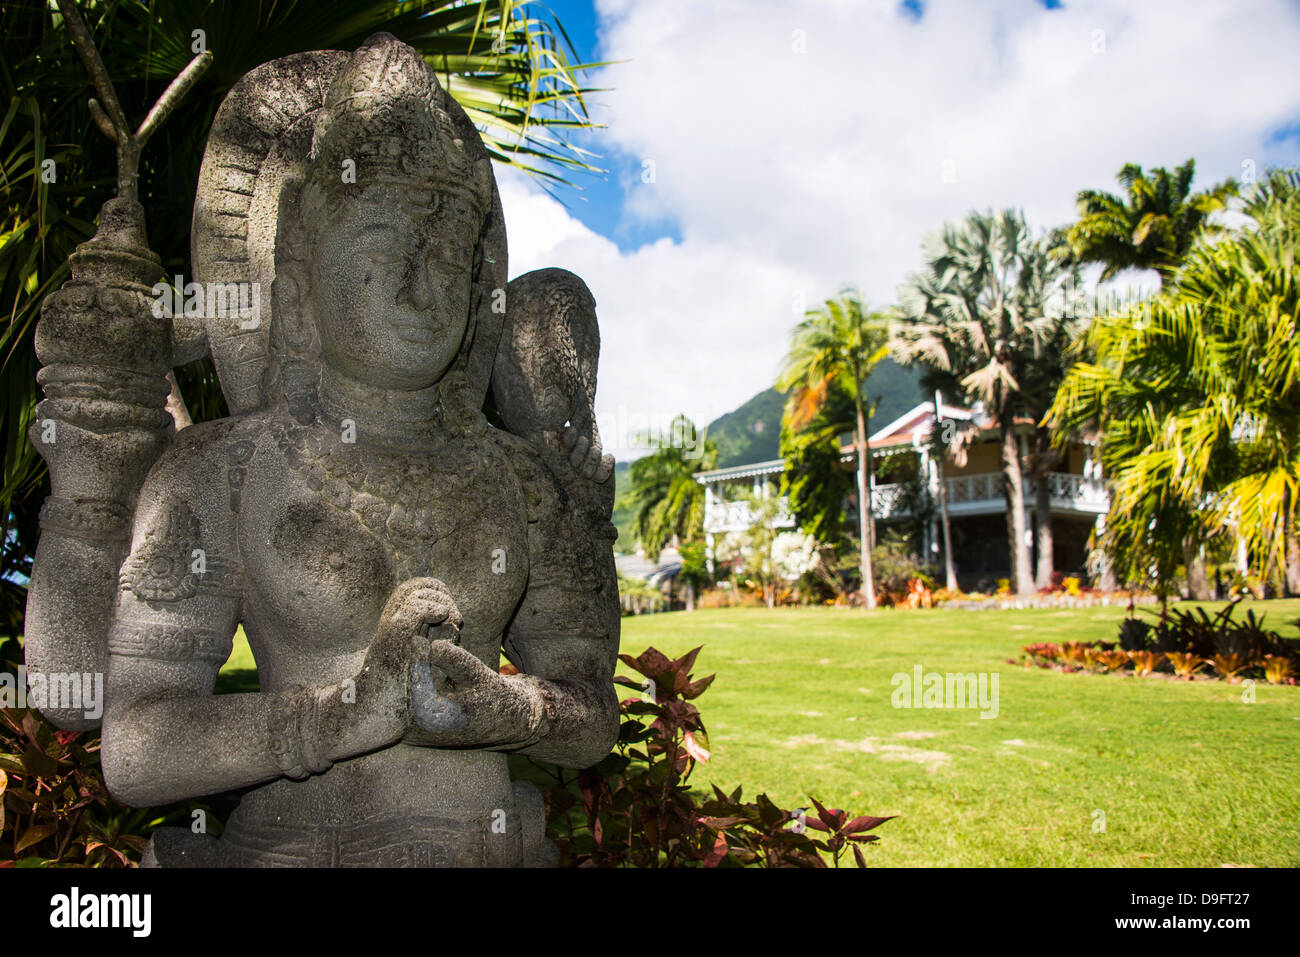 Statues bouddhistes dans le jardin botanique sur l'île de Nevis, Saint Kitts et Nevis, Iles sous le vent, Antilles, Caraïbes Banque D'Images